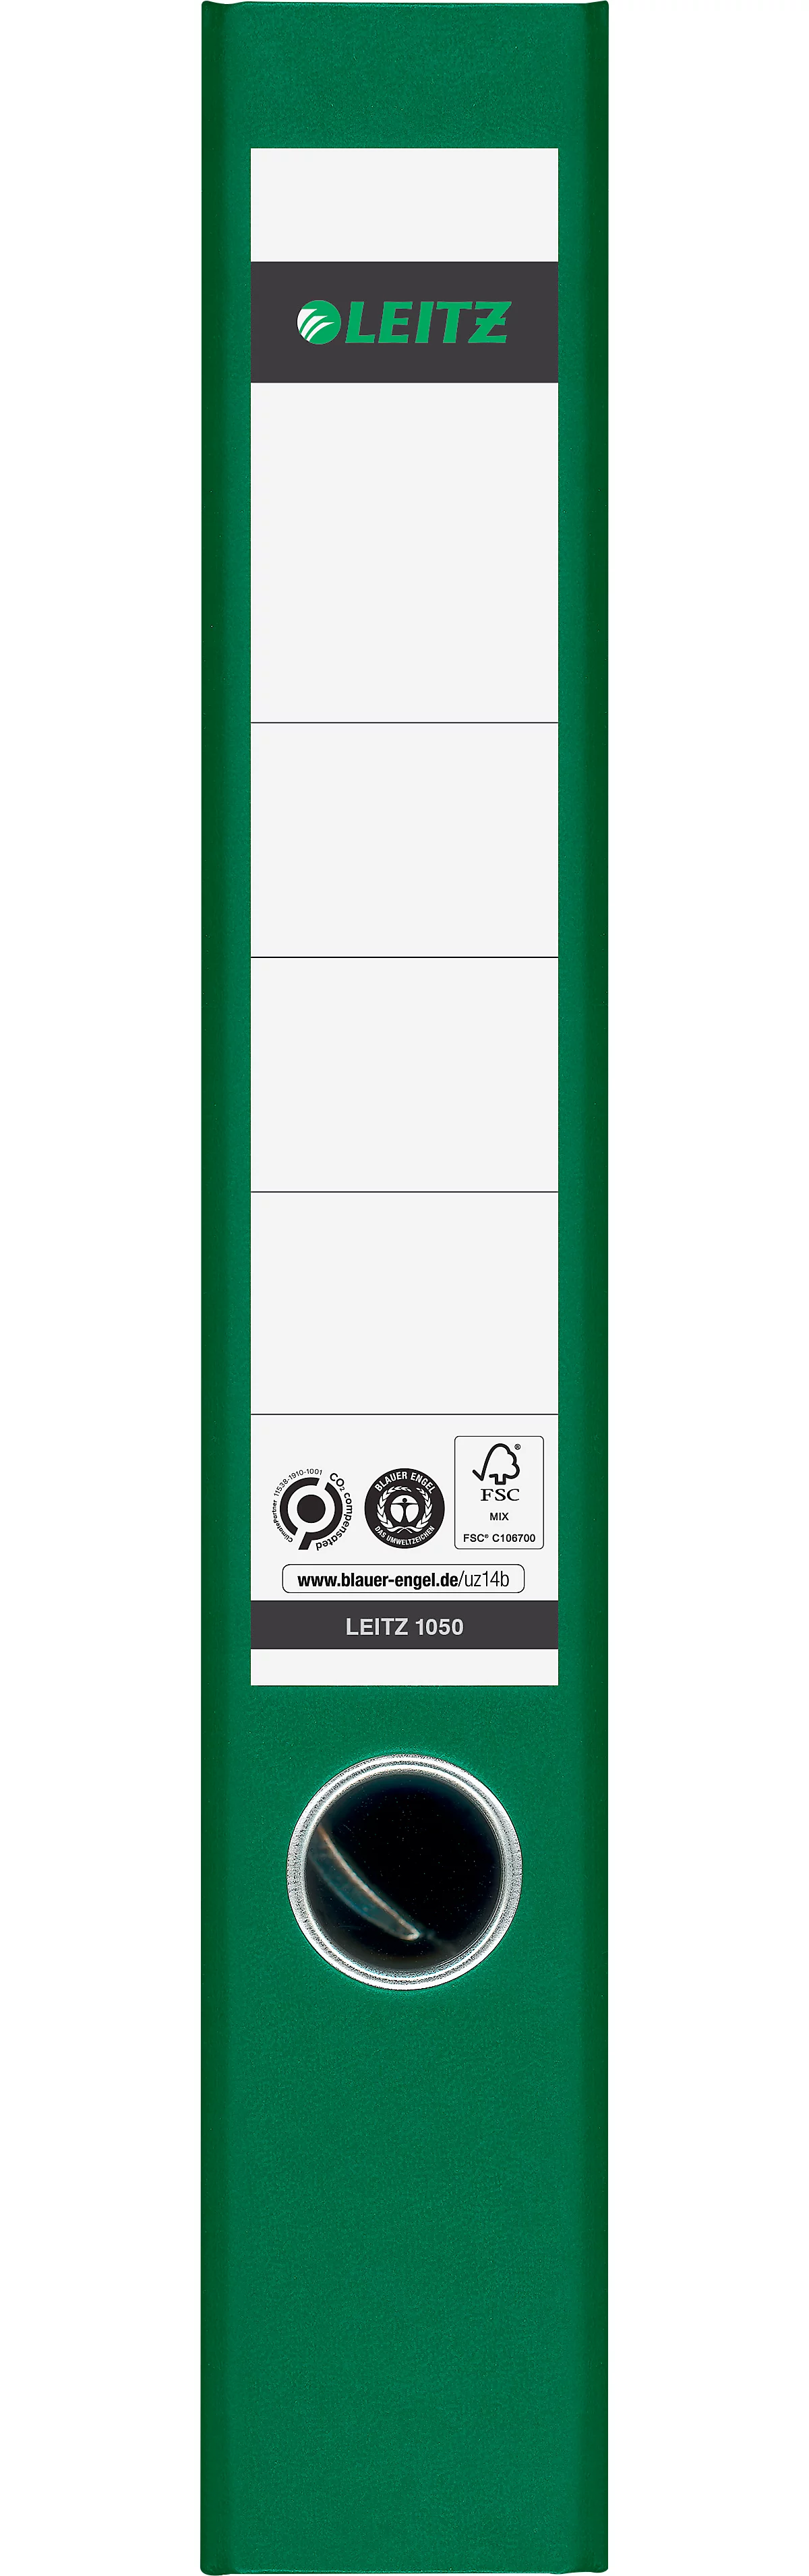 Ordner LEITZ®1050, DIN A4, Rückenbreite 52 mm, Griffloch, geklebtes Rückenschild, klimaneutral, Hartpappe, 20 Stück, grün